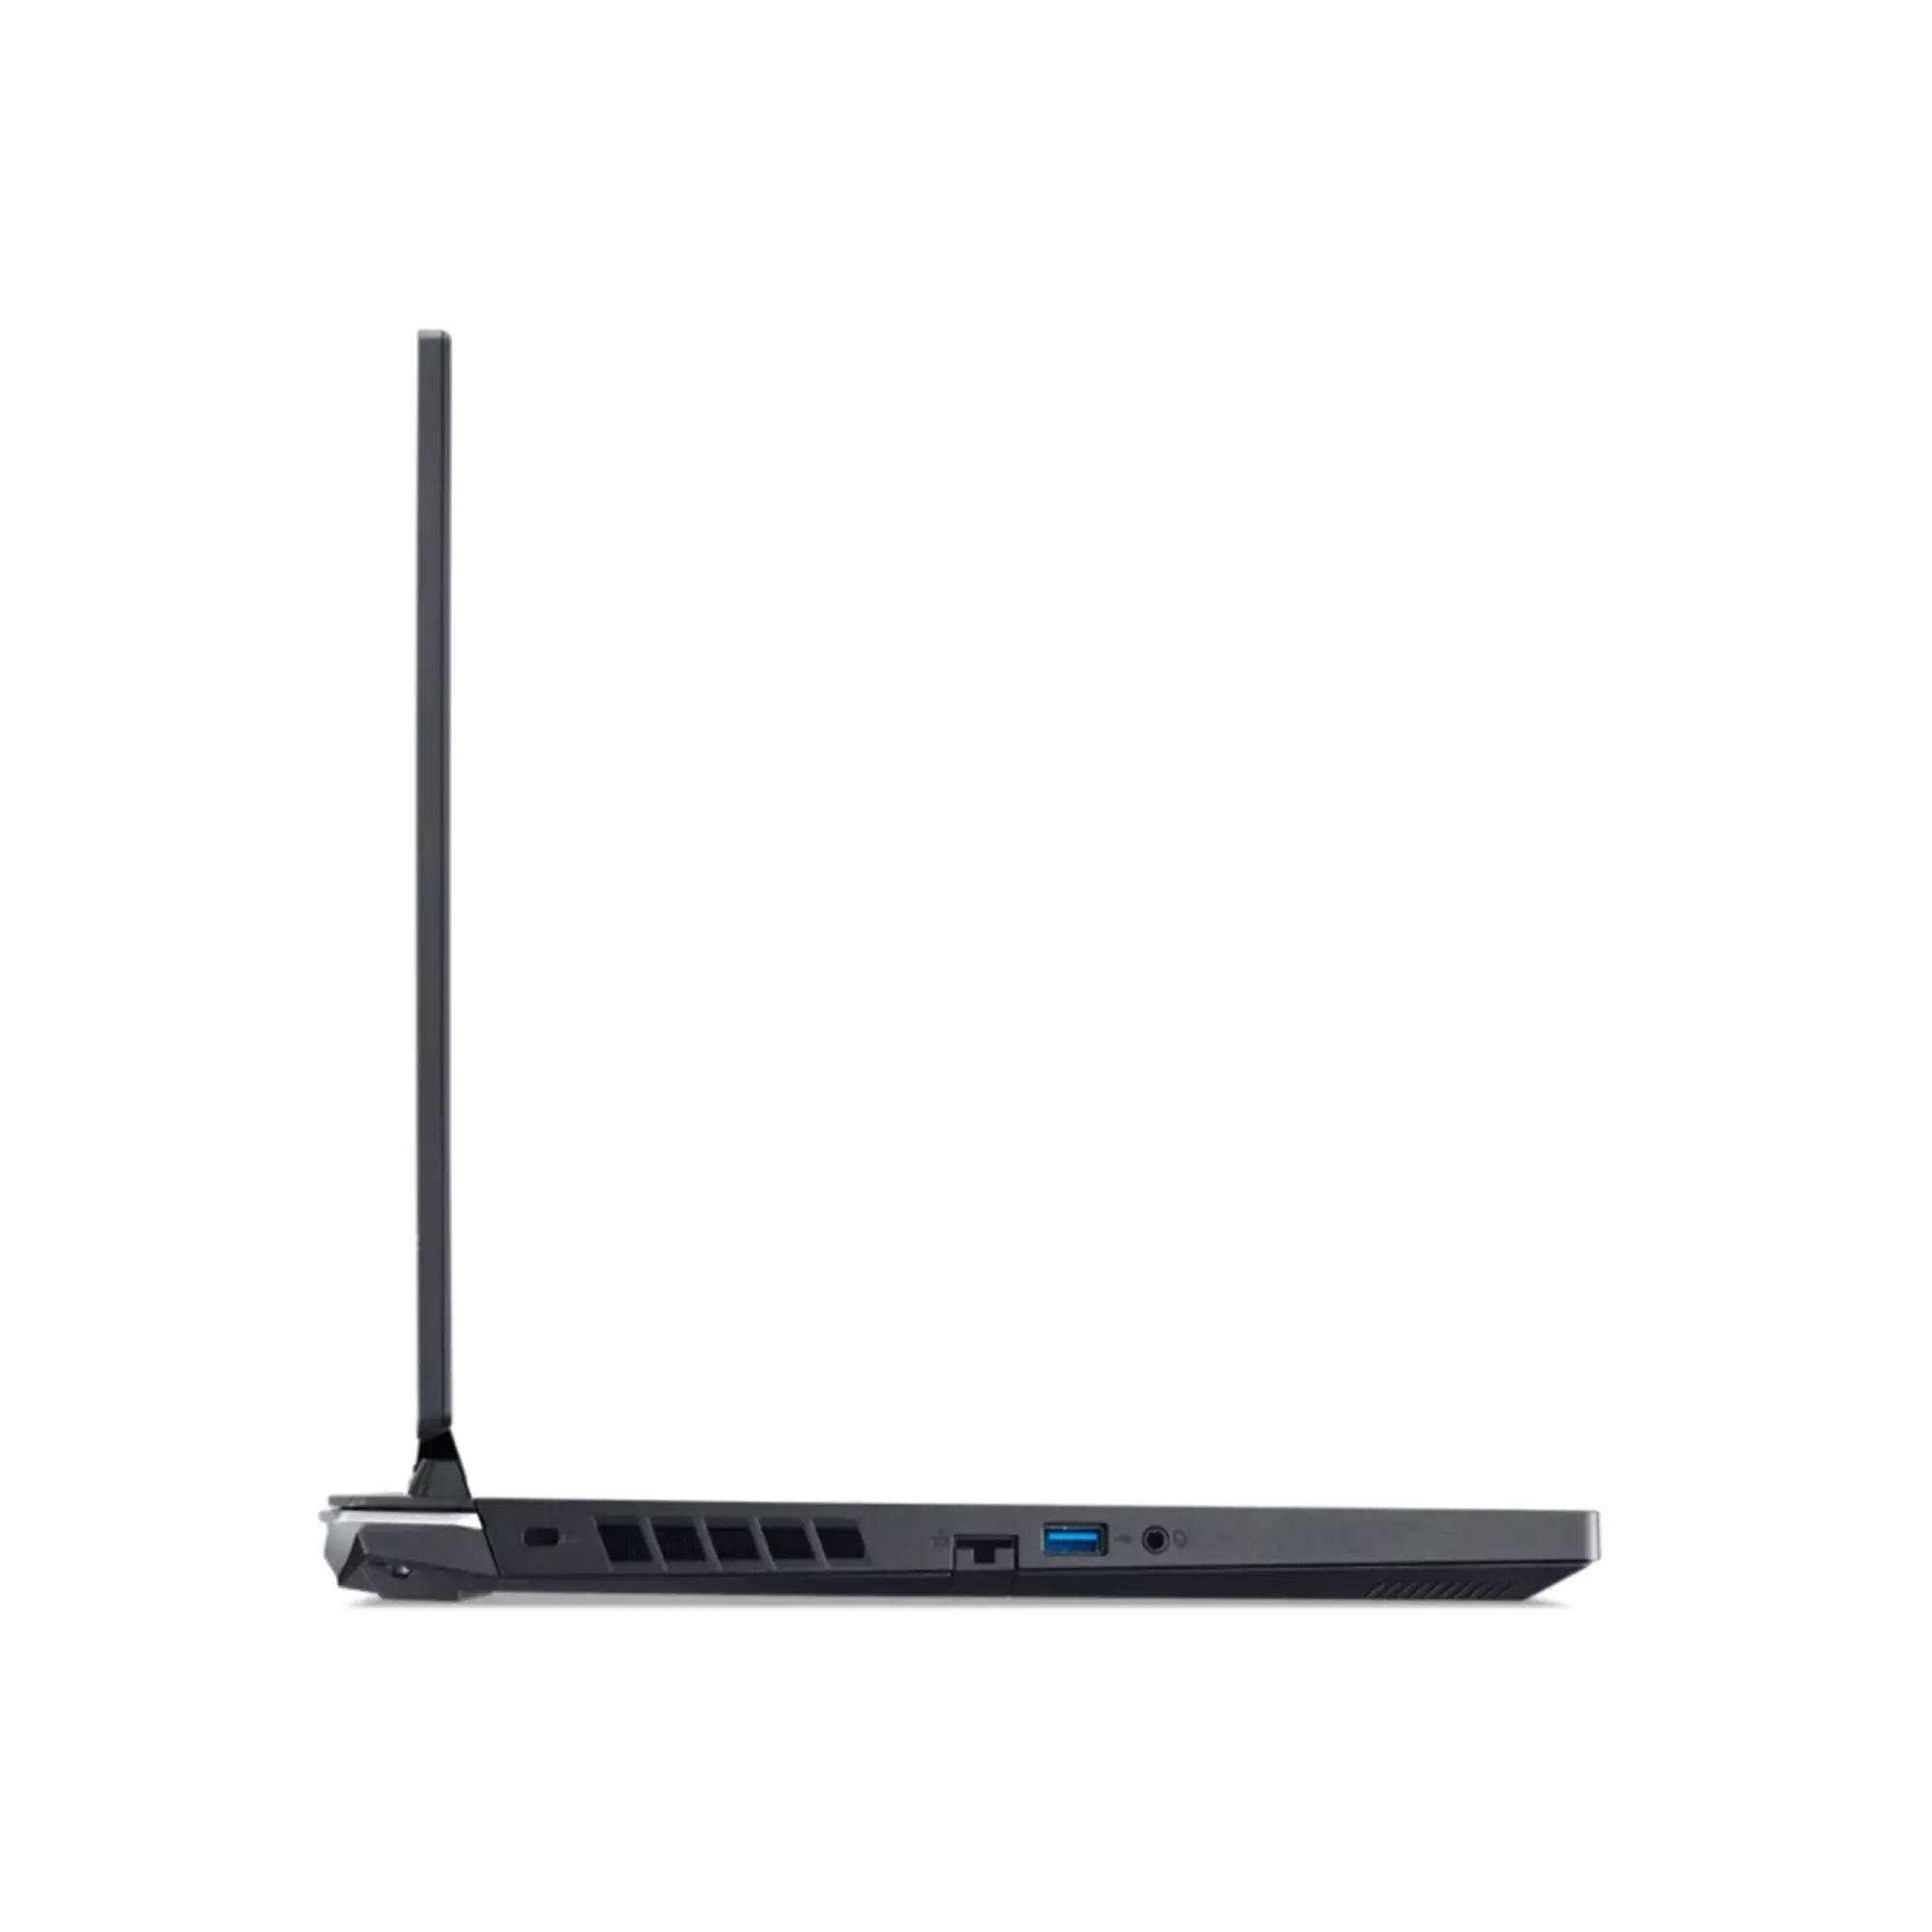 Acer Nitro 5 2022 i5 12th Gen 12500H / RTX 3050 / 8GB RAM / 512GB SSD / 15.6" FHD 144Hz display / backlight Keyboard / 2 Year warranty